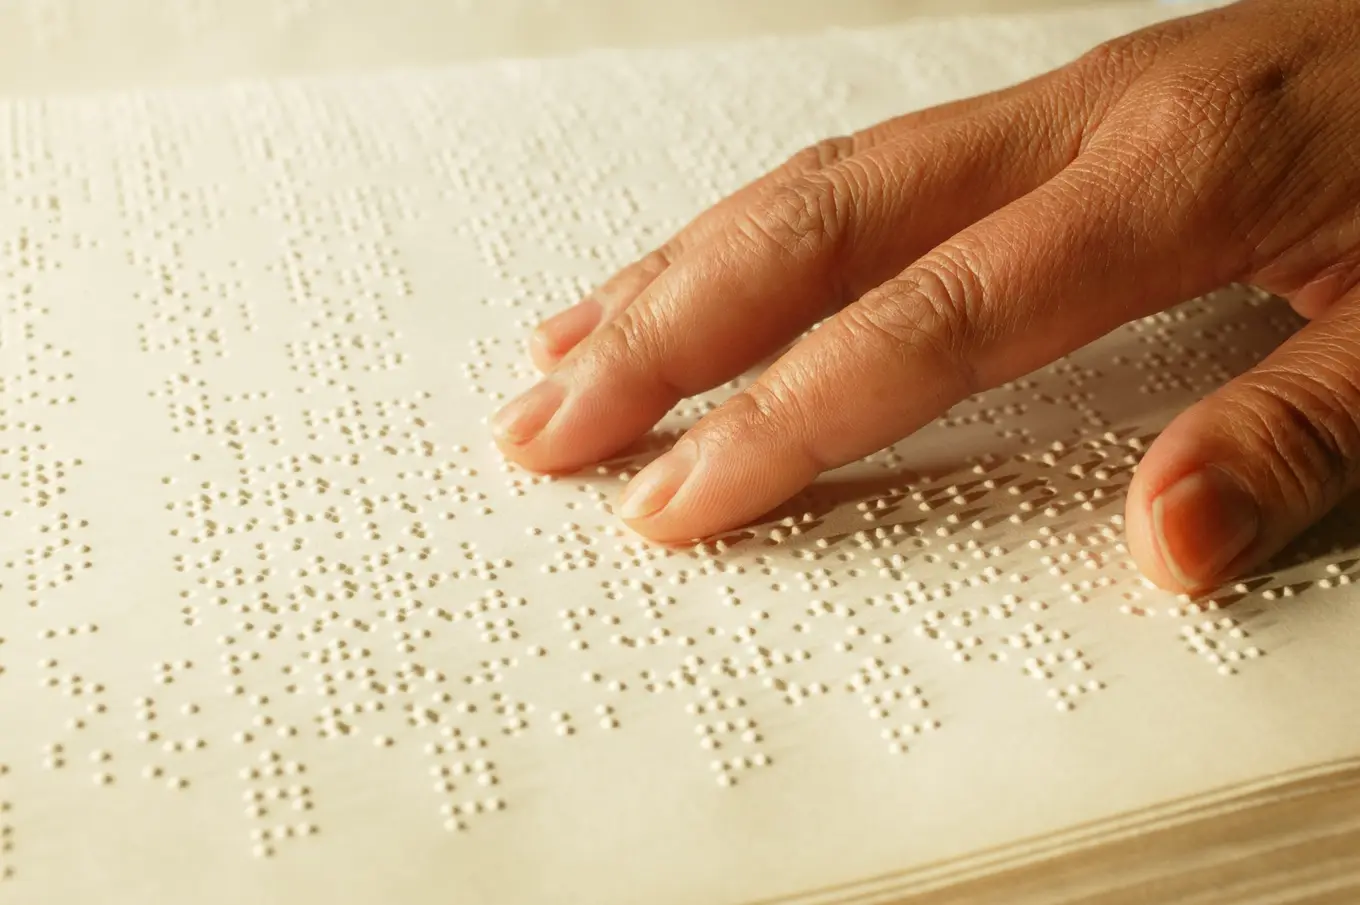 broszura z alfabetem Braille'a